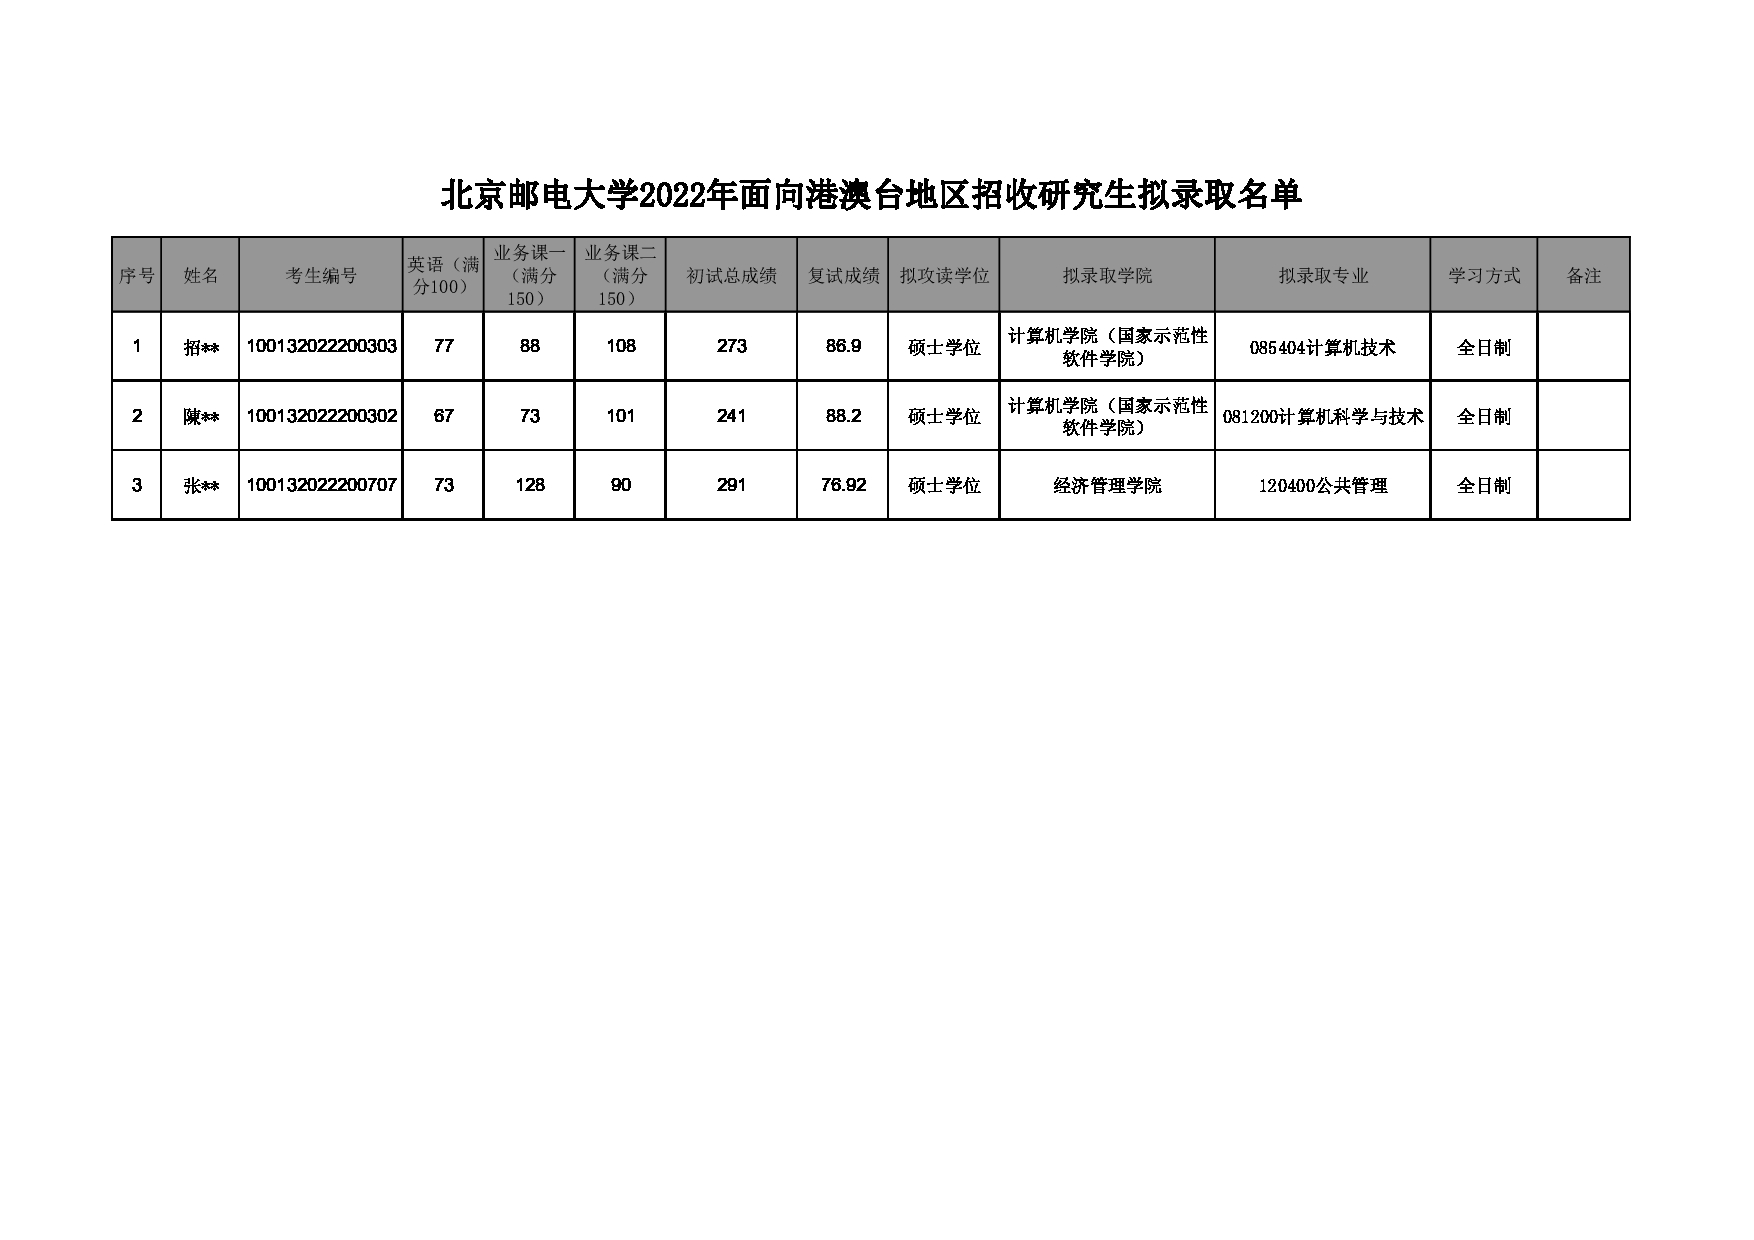 2022考研拟录取名单：北京邮电大学2022年面向港澳台地区招收硕士研究生拟录取名单第1页